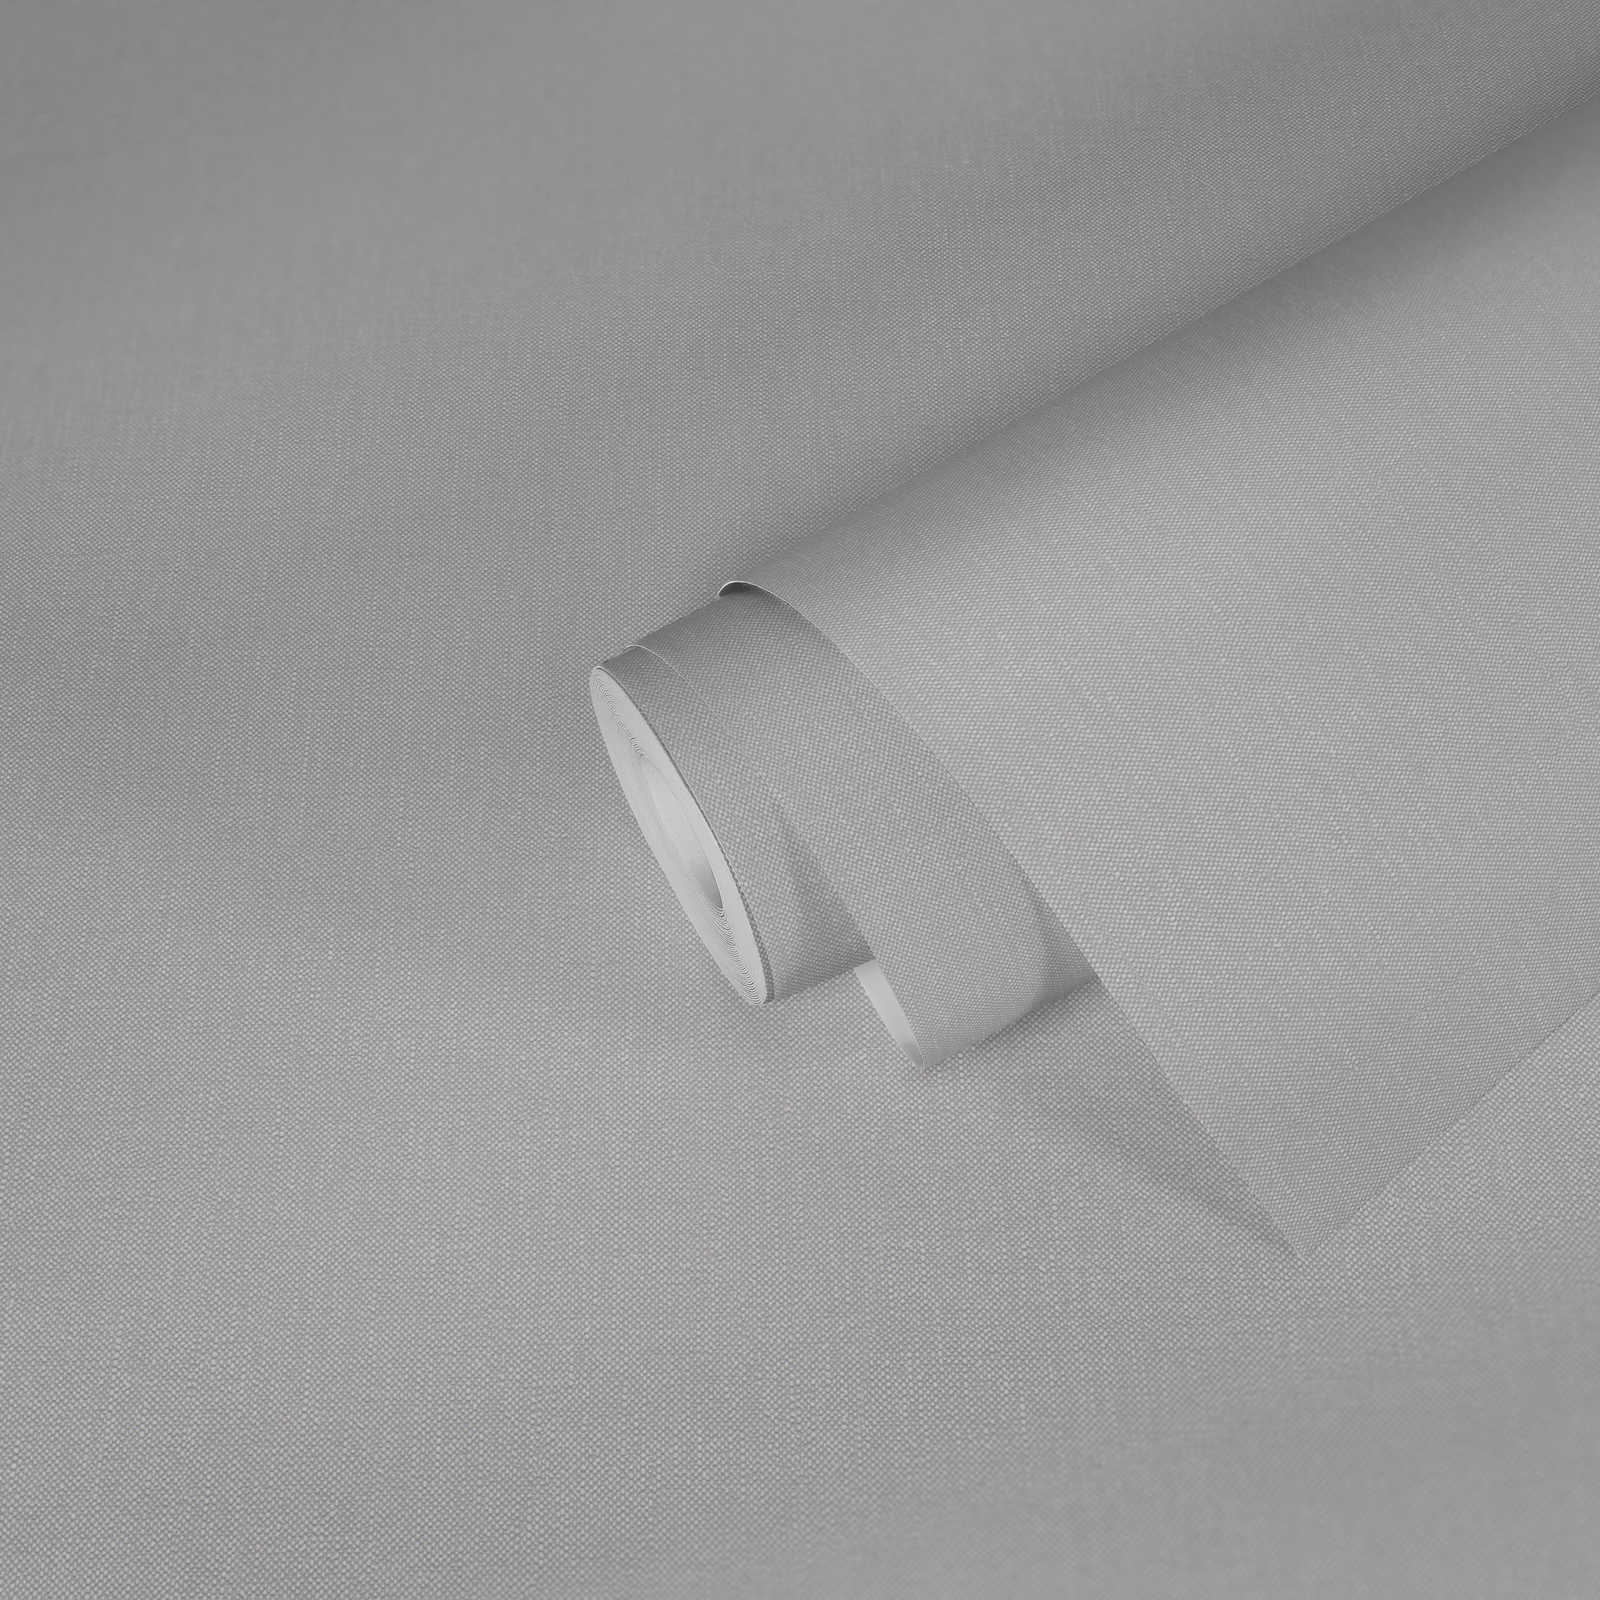             Papier peint aspect textile et structure tissée - gris
        